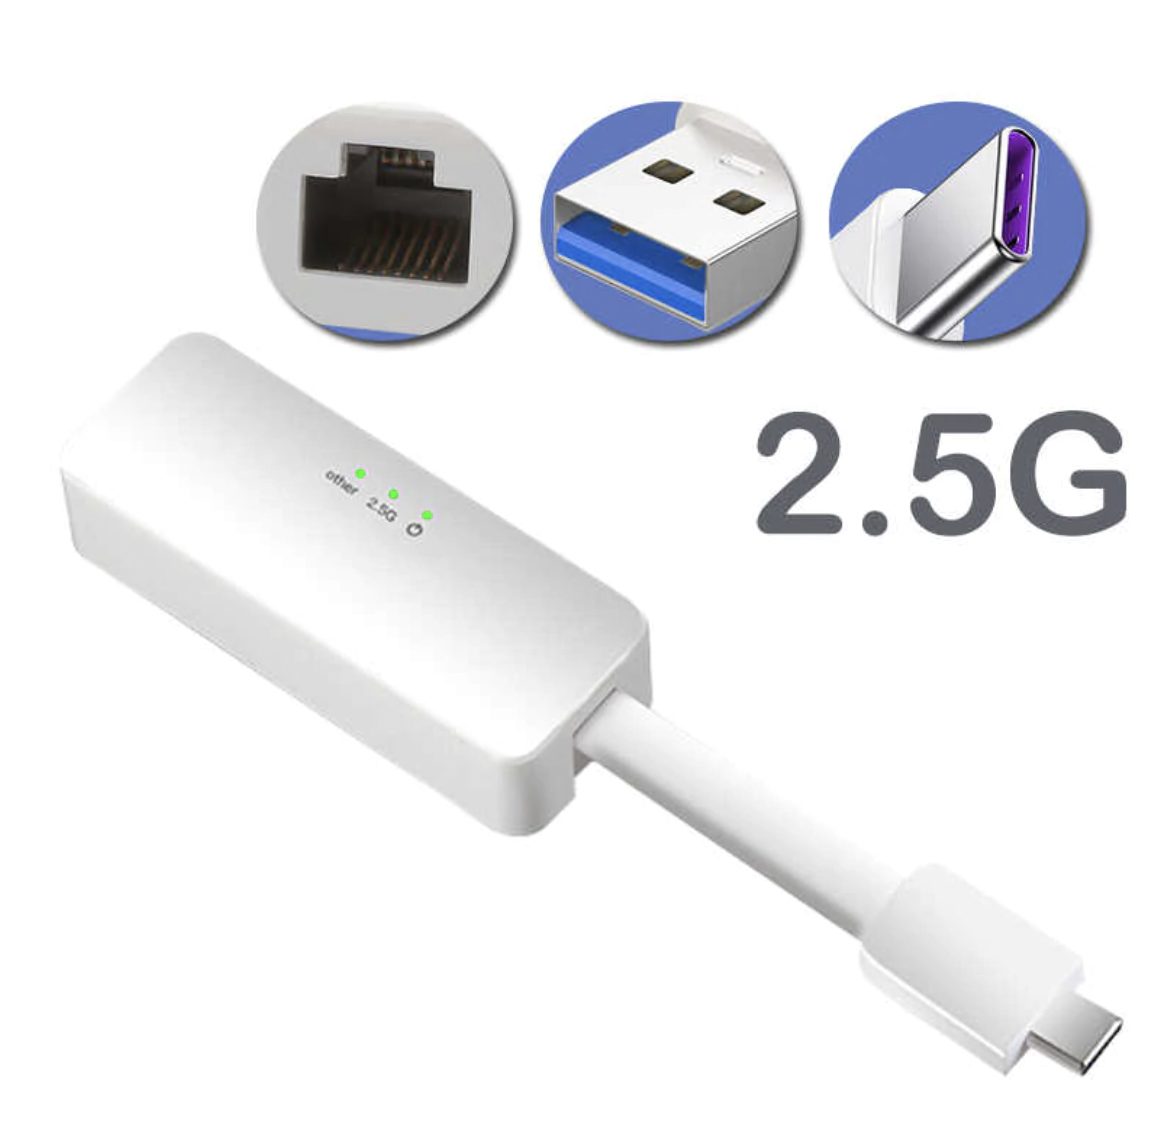 銳角雲運用(三) 在vSphere安裝Realtek 8156  USB 2.5Gbps 網路卡